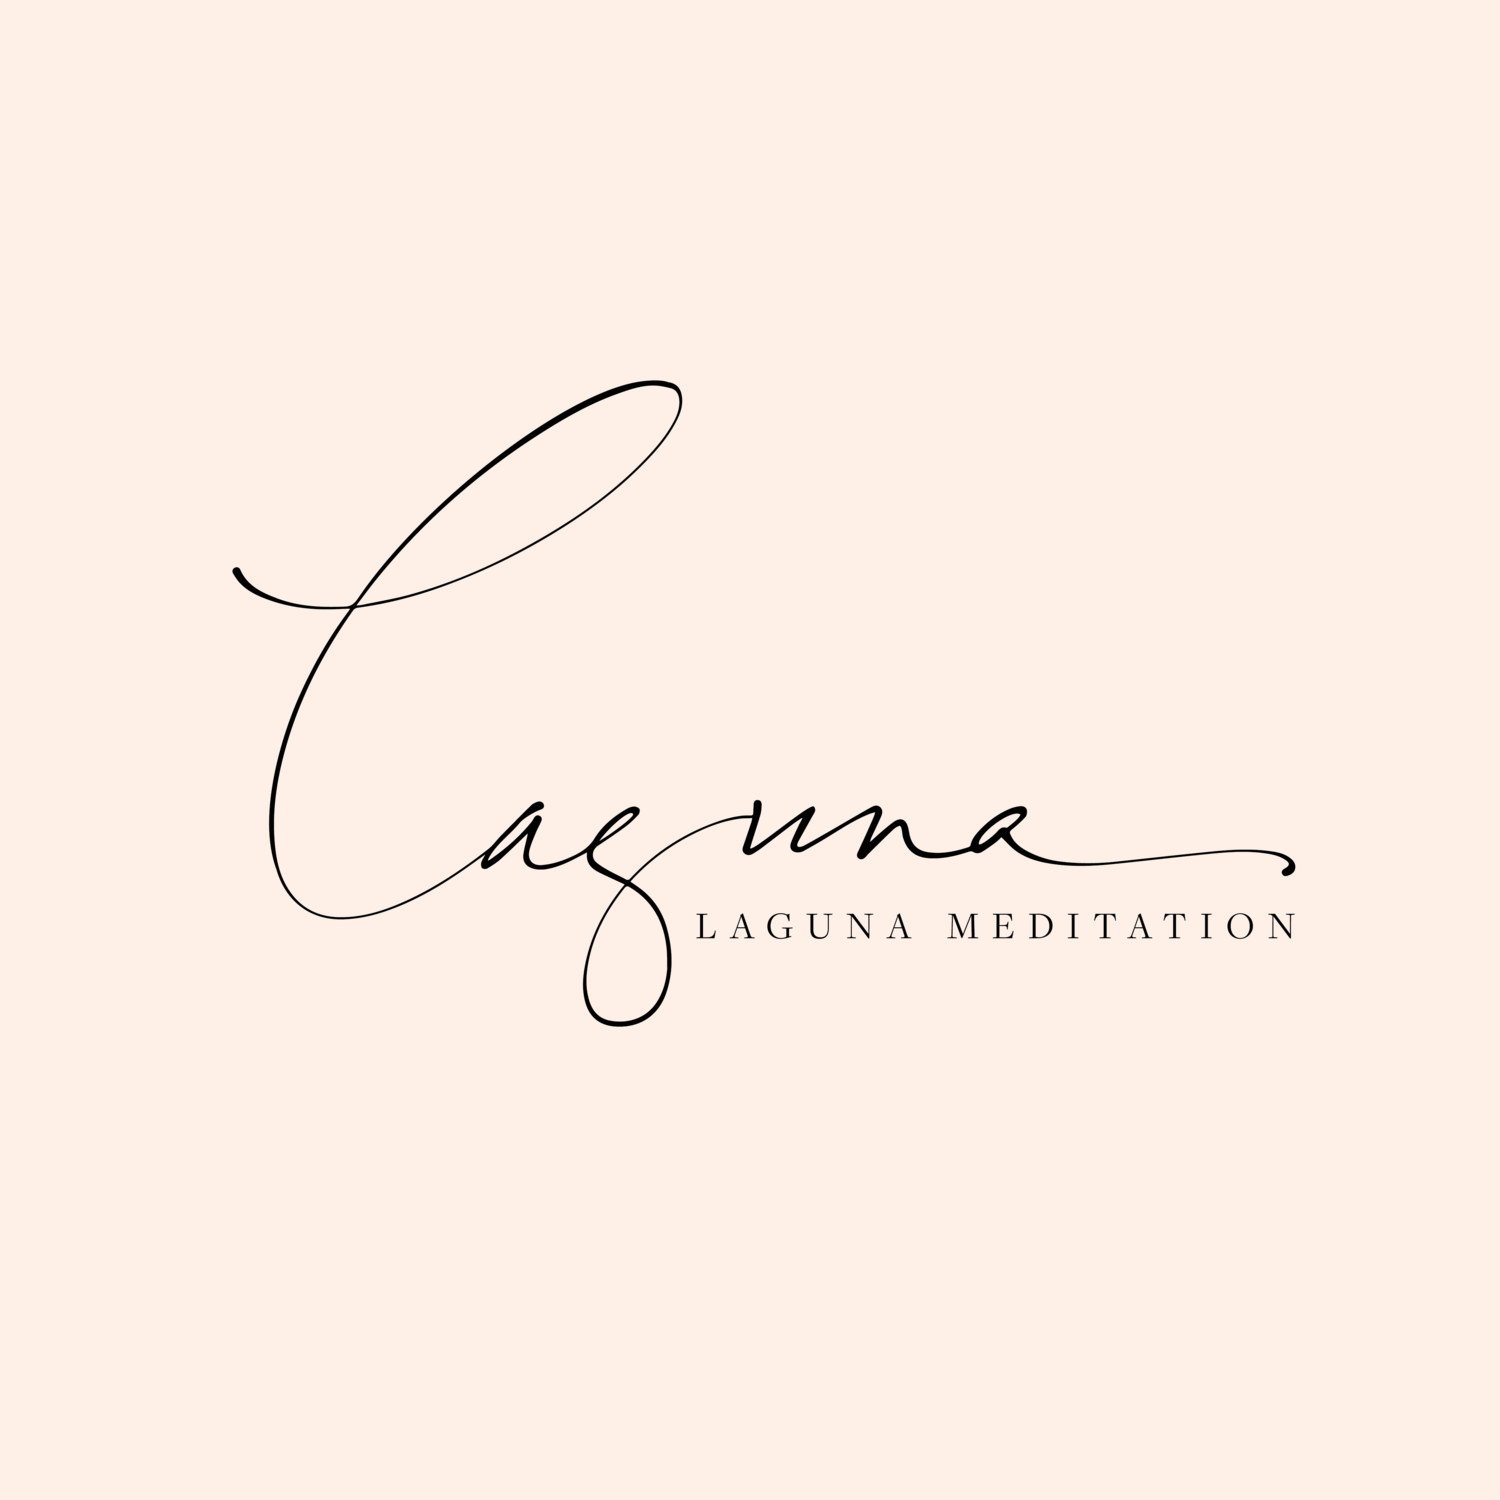 Laguna meditation